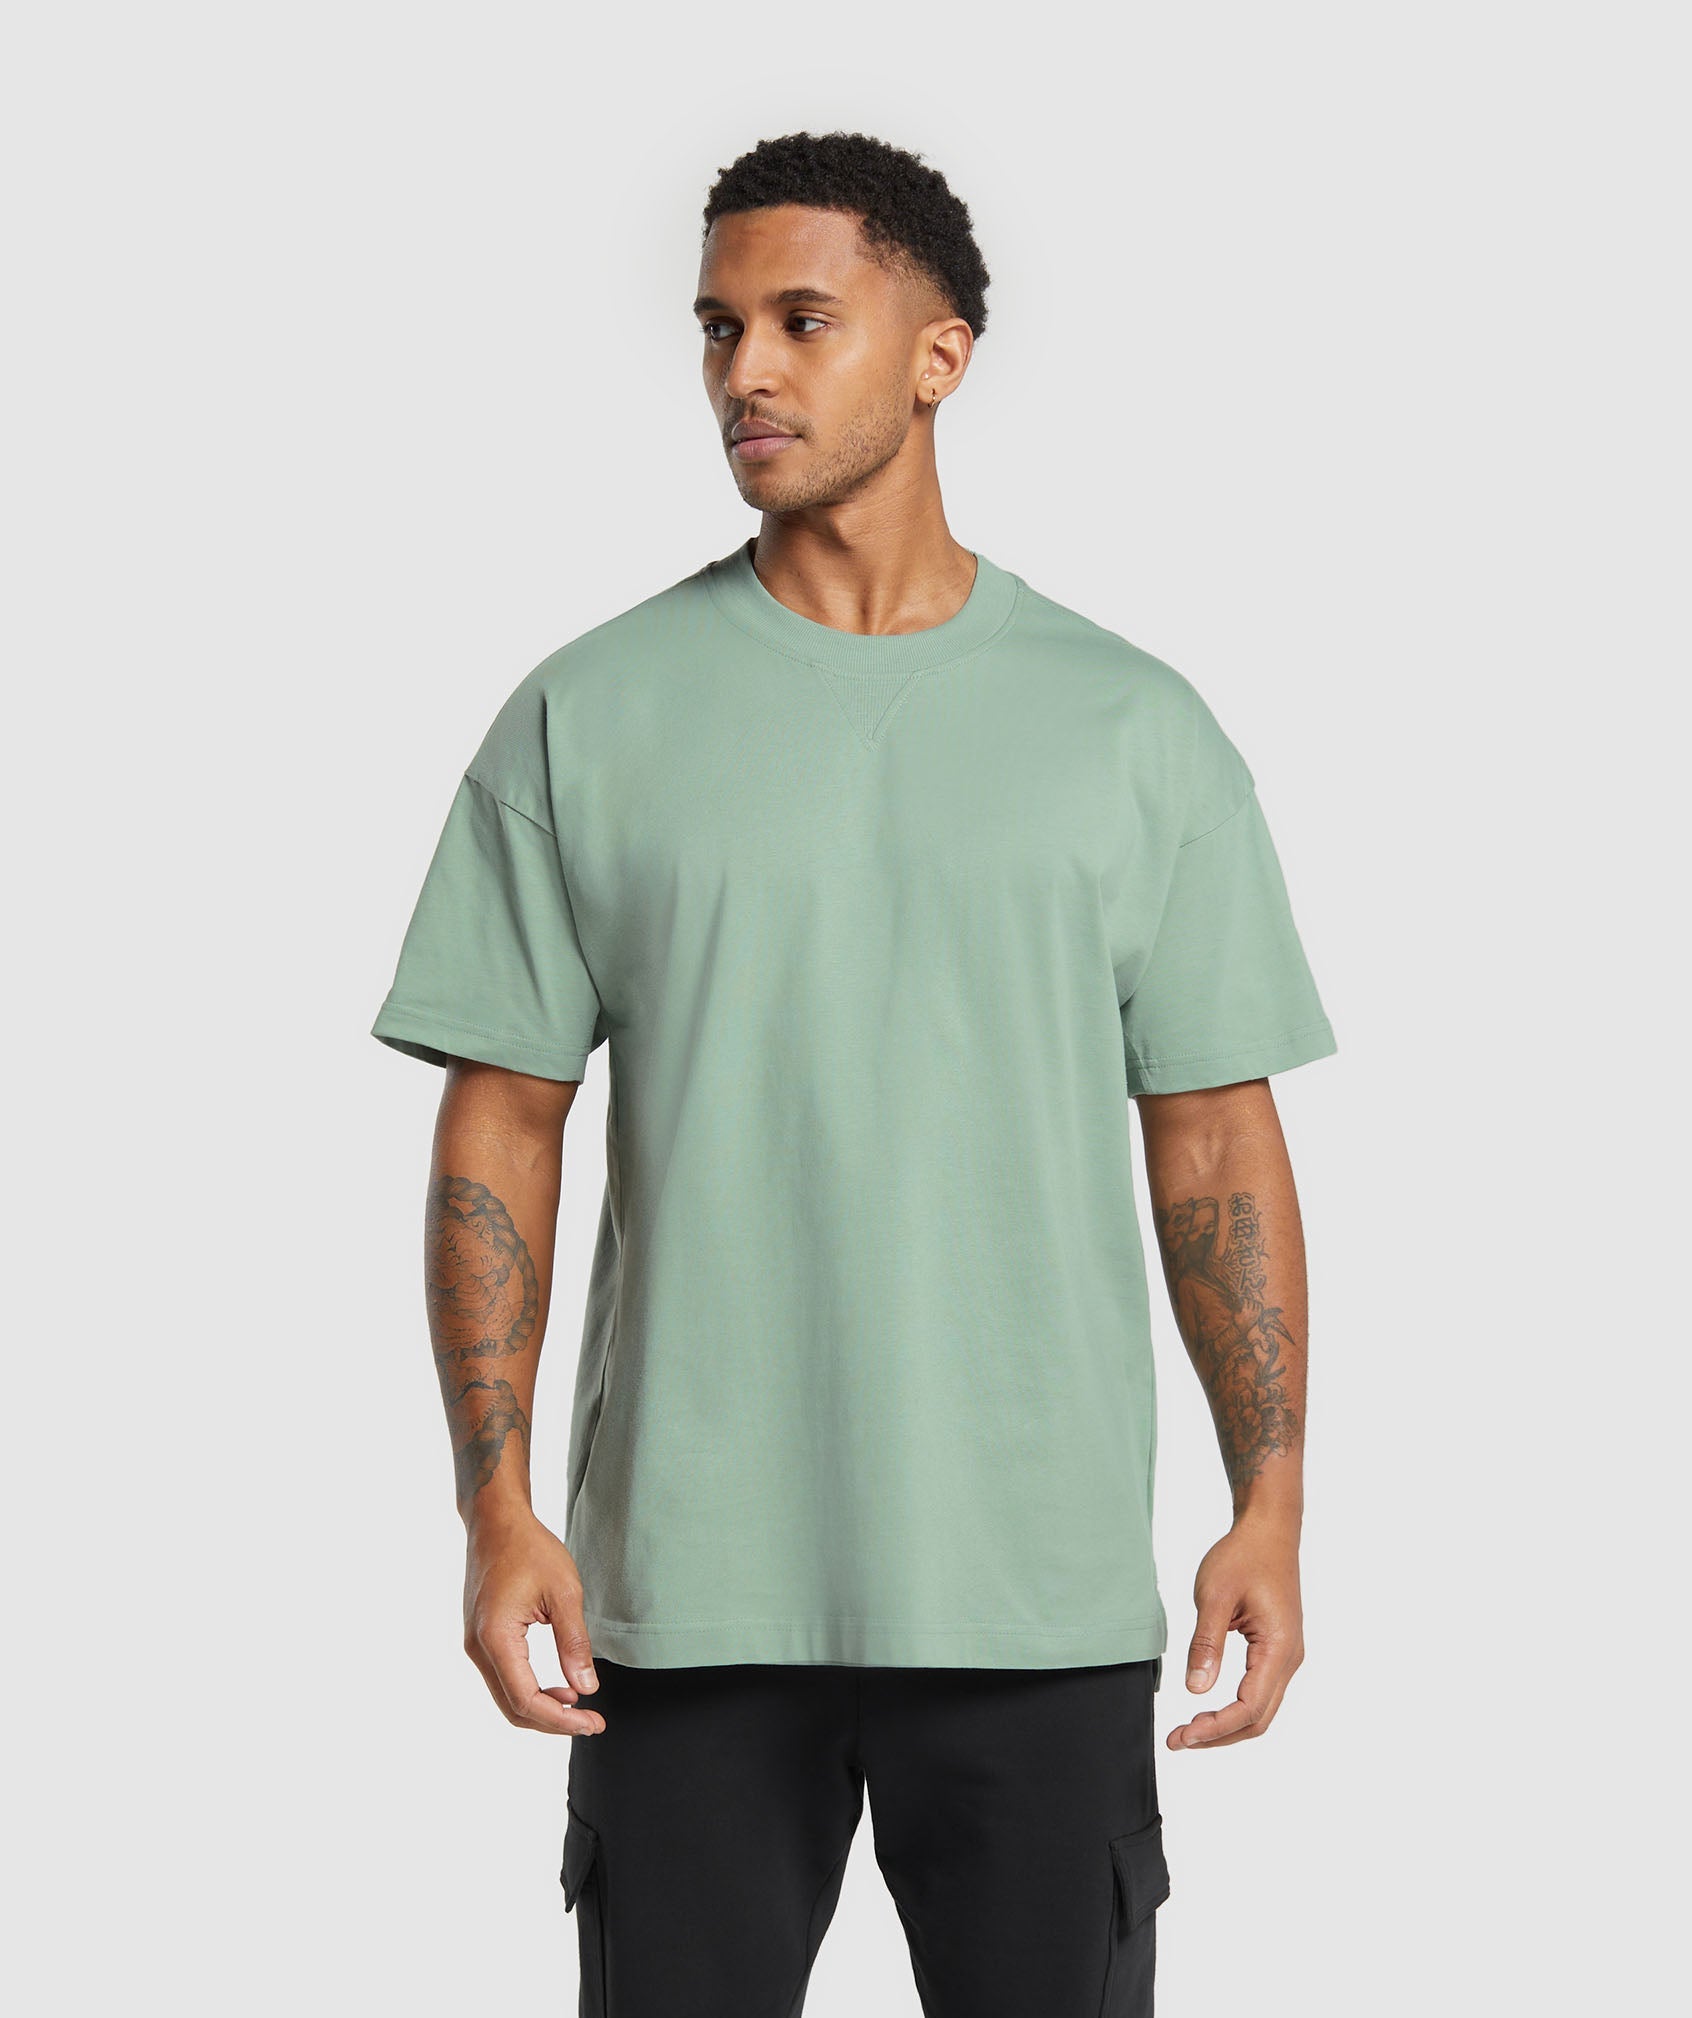 Rest Day Essentials T-Shirt in Dollar Green ist nicht auf Lager